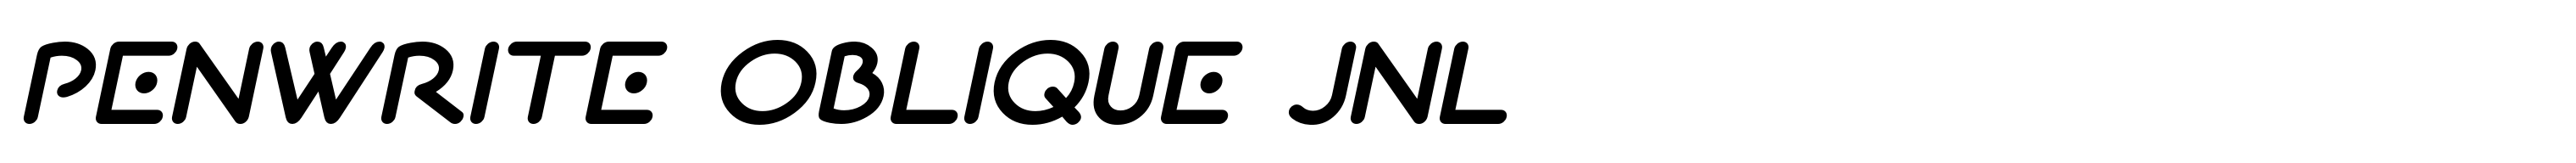 Penwrite Oblique JNL